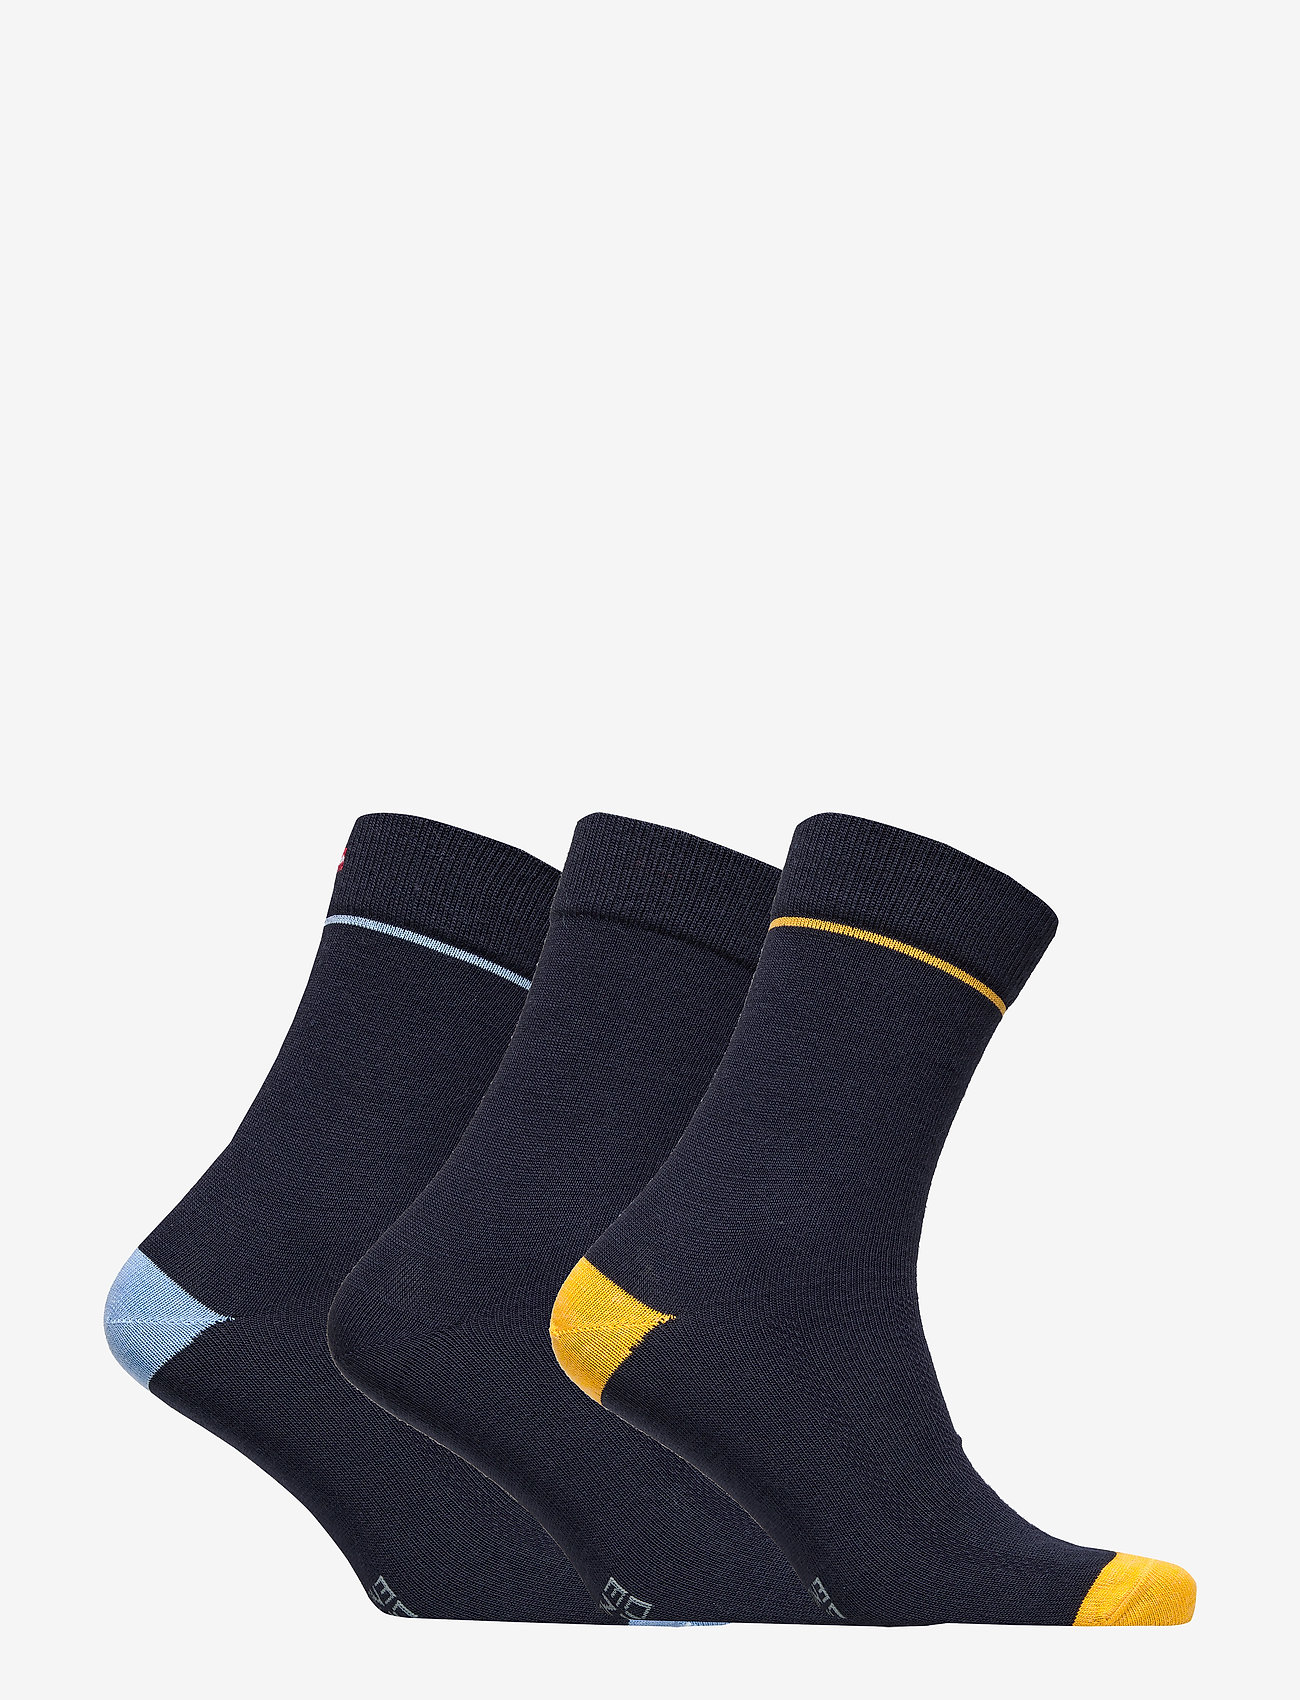 Danish Endurance Merino Blend Dress Socks 3 Pack - Regular socks ...